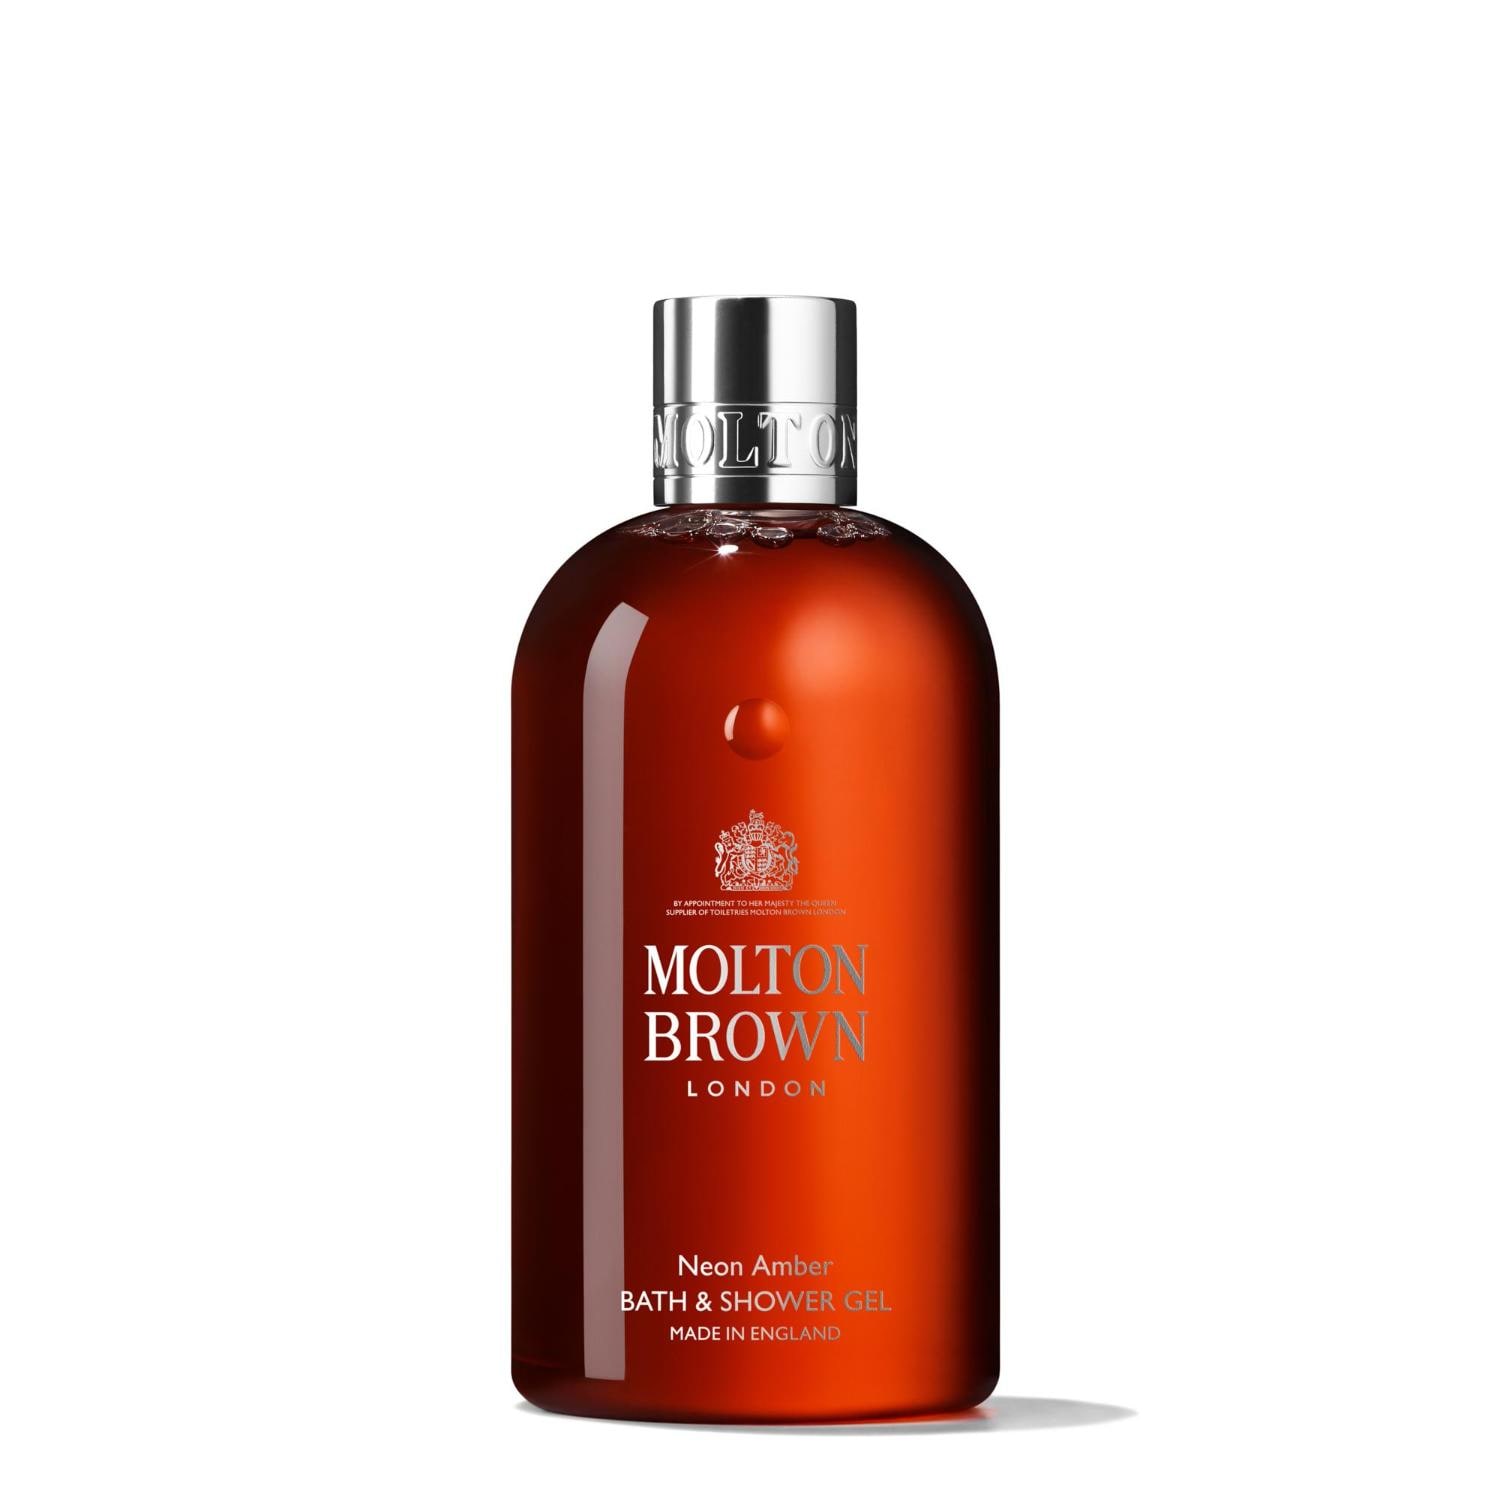 Molton Brown Body Essentials Neon Amber Bath & Shower Gel